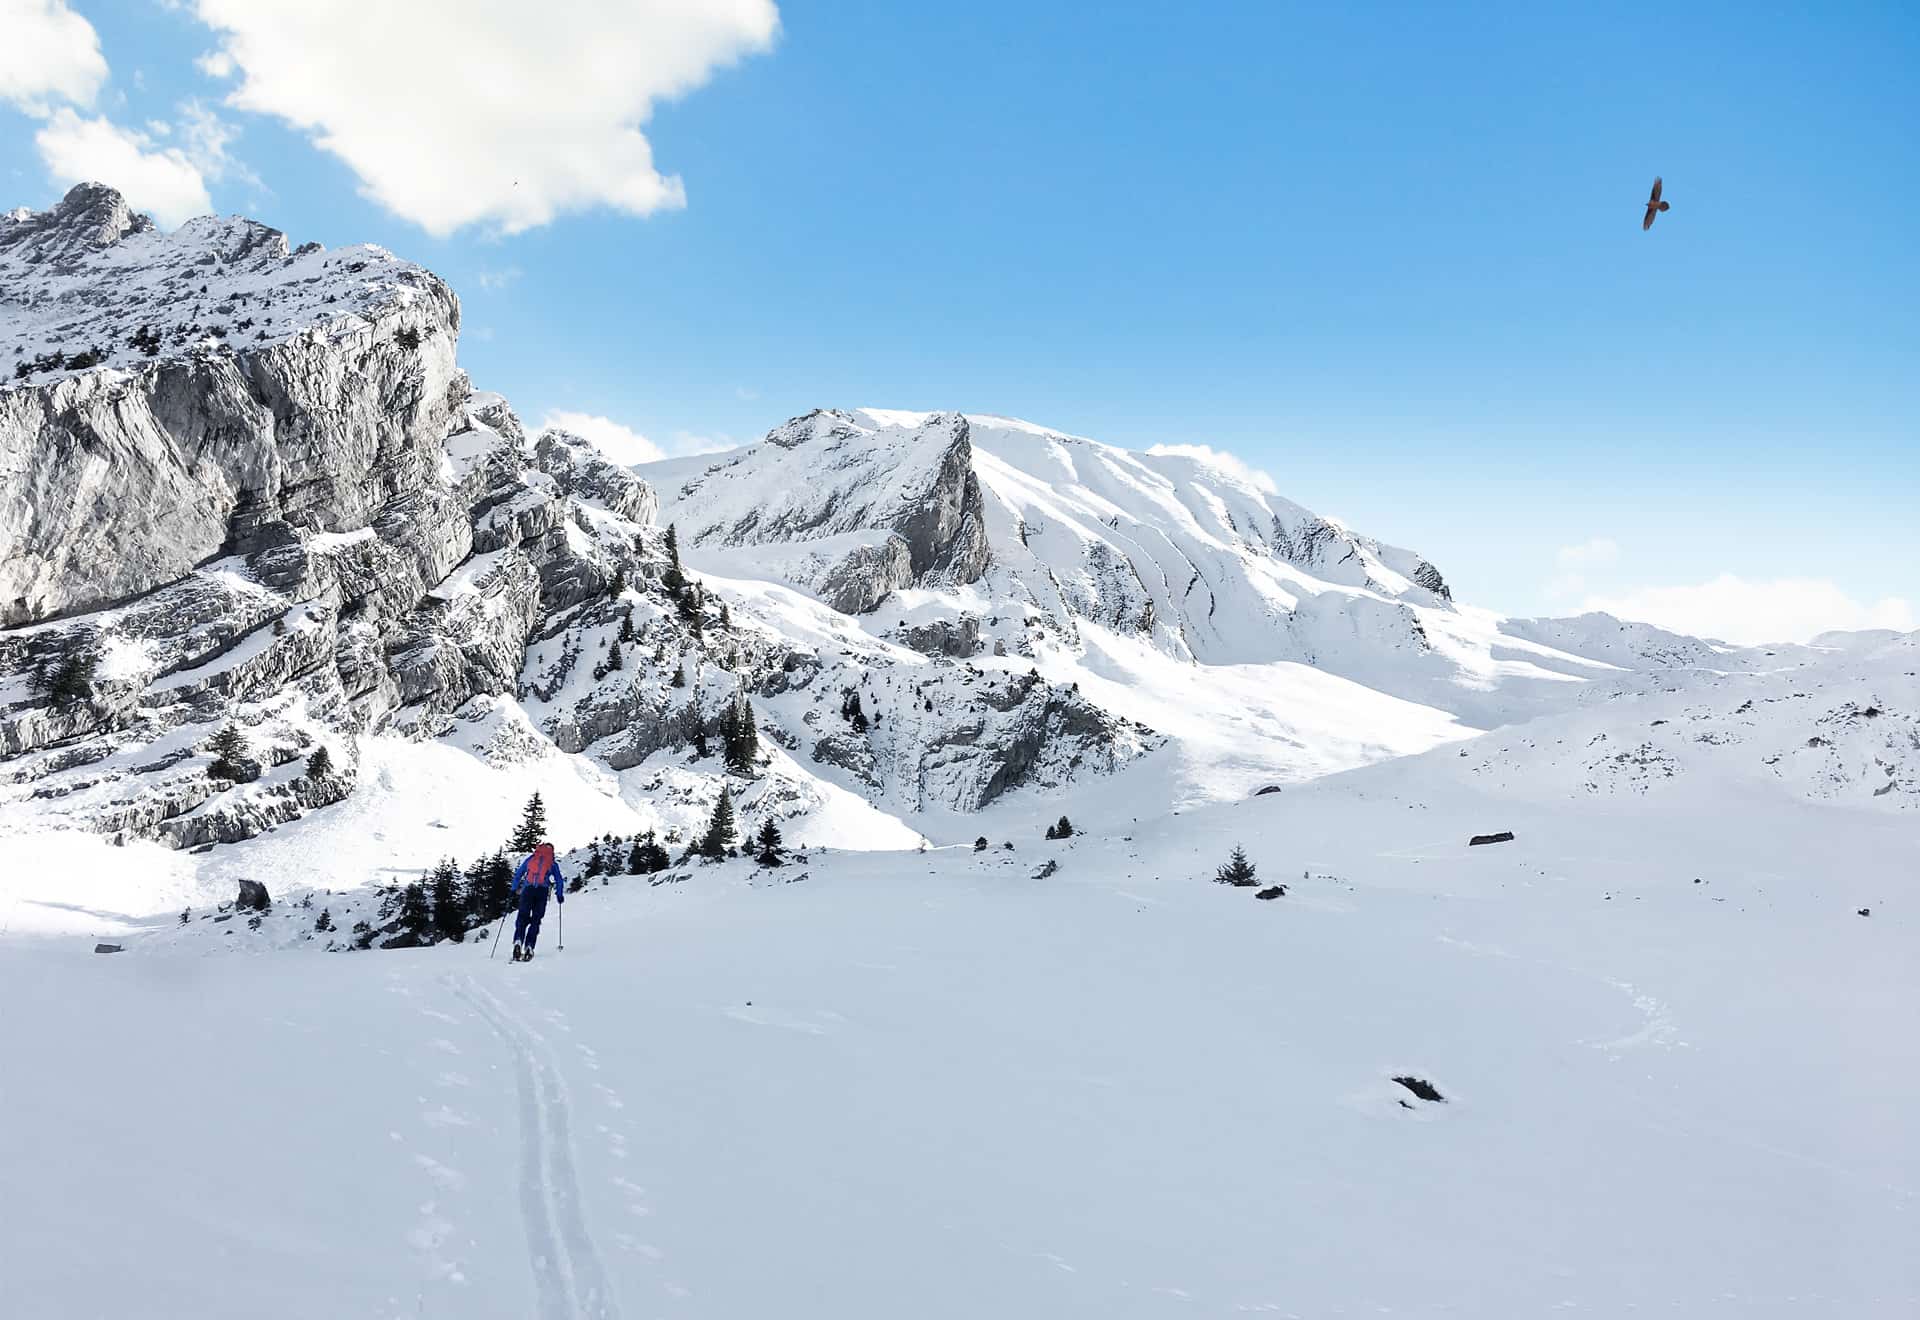 Winter activities: Ski touring